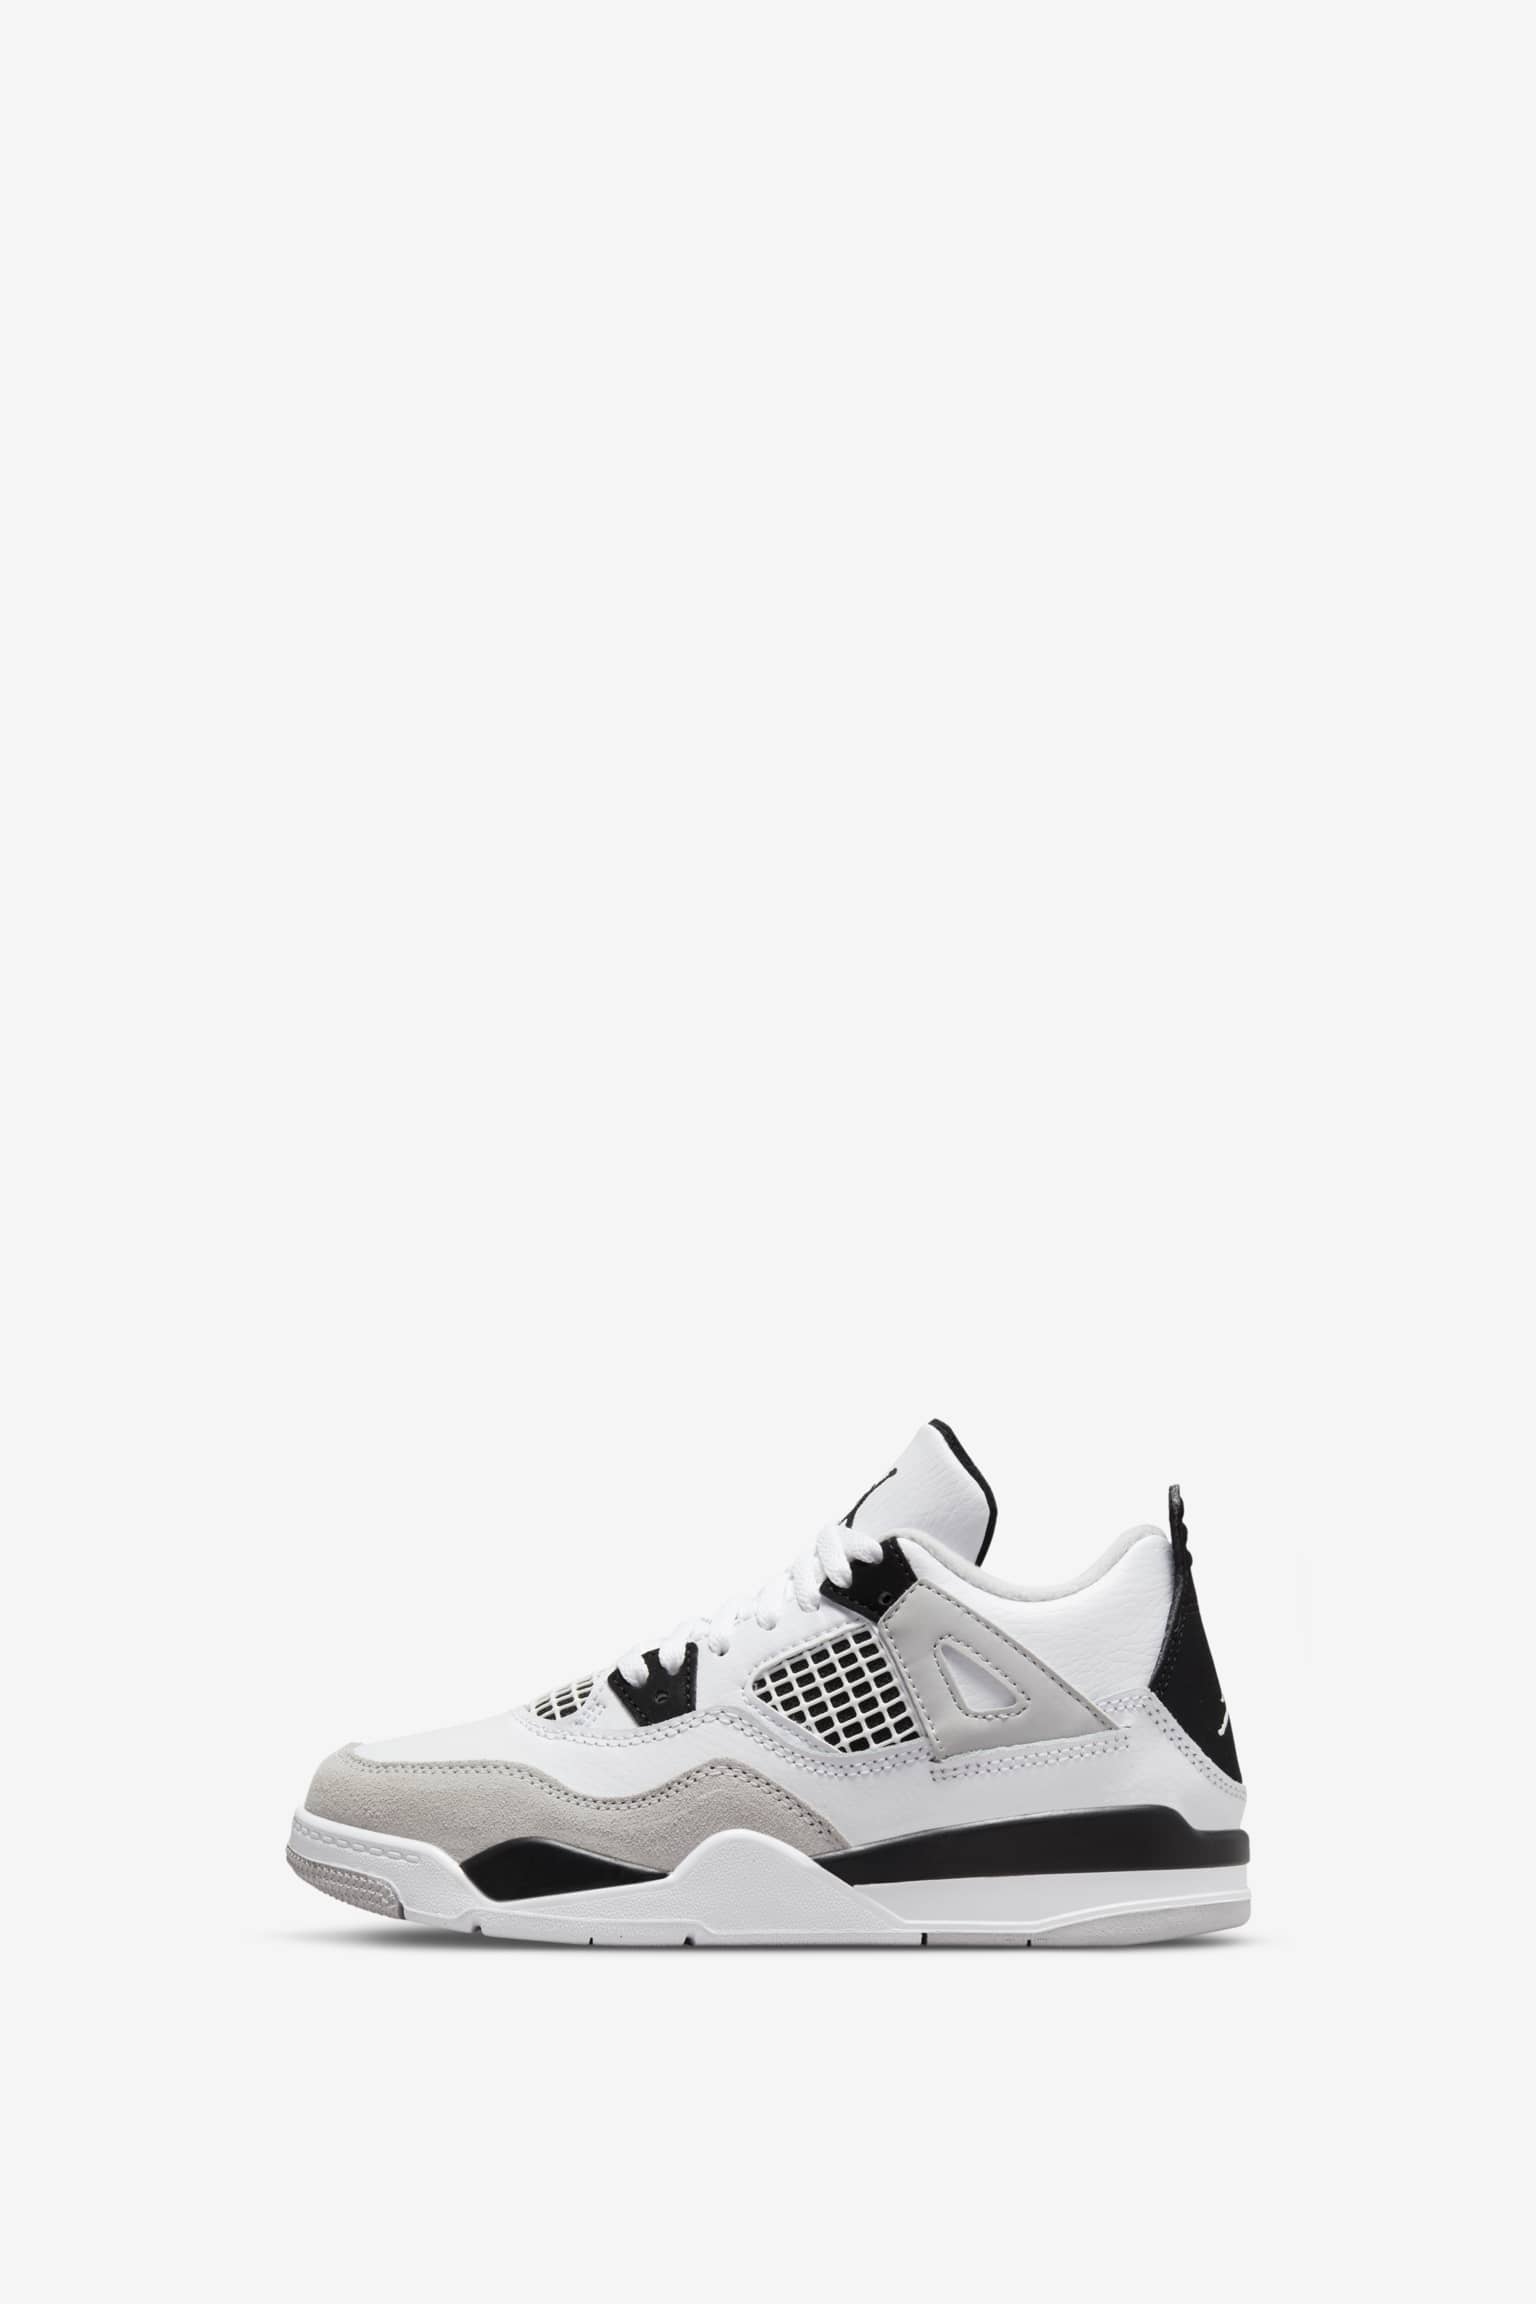 Nike Air Jordan 4 Retro Blancas y Negras por 64,95€, Envío Gratis